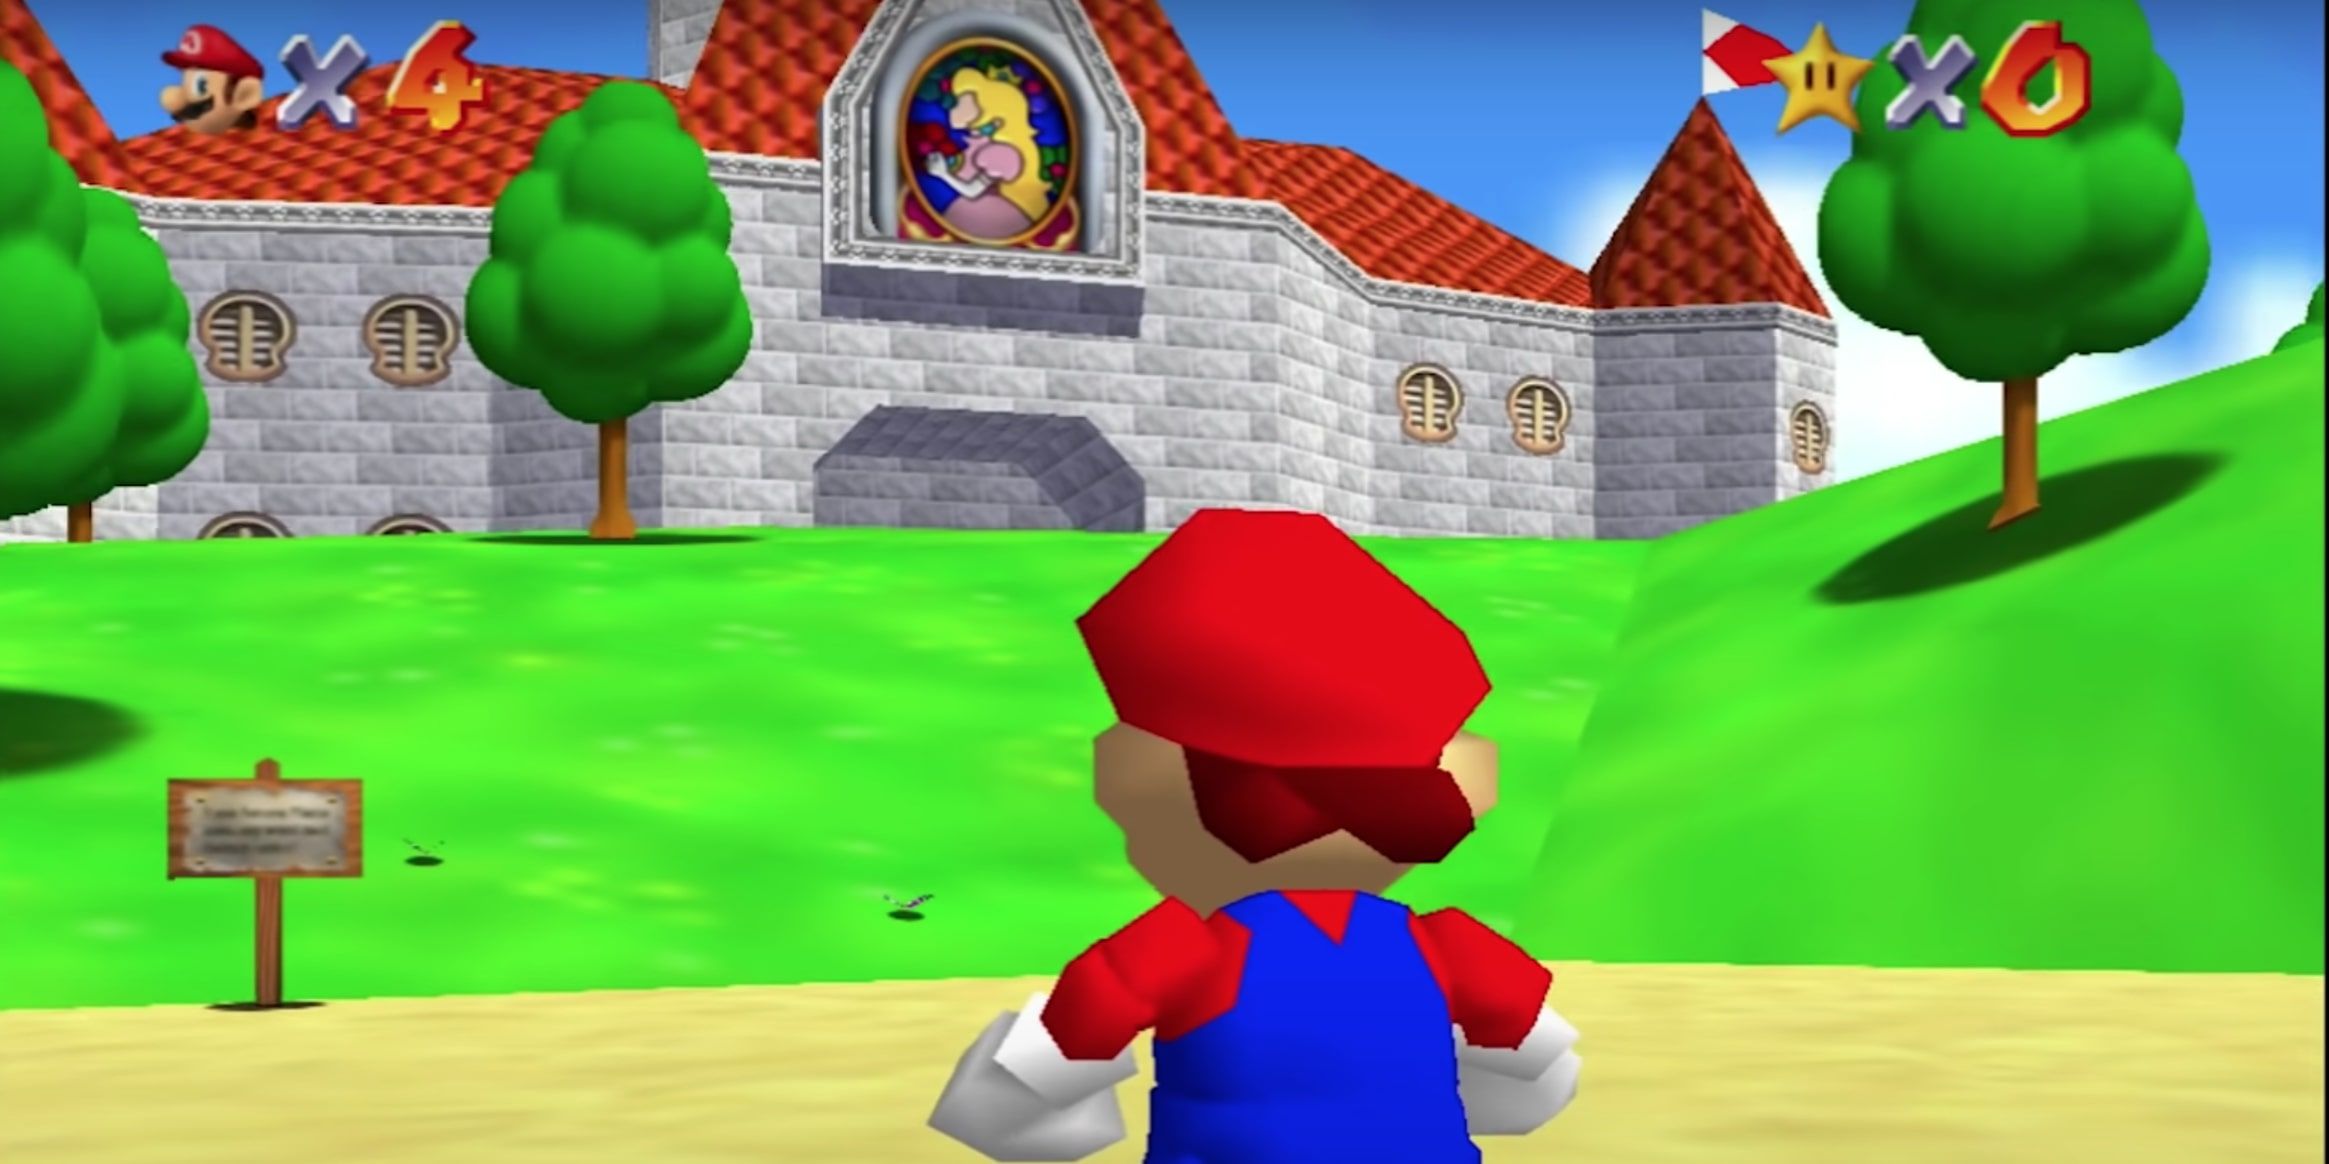 Mario standing outside Peach's Castle in Super Mario 64